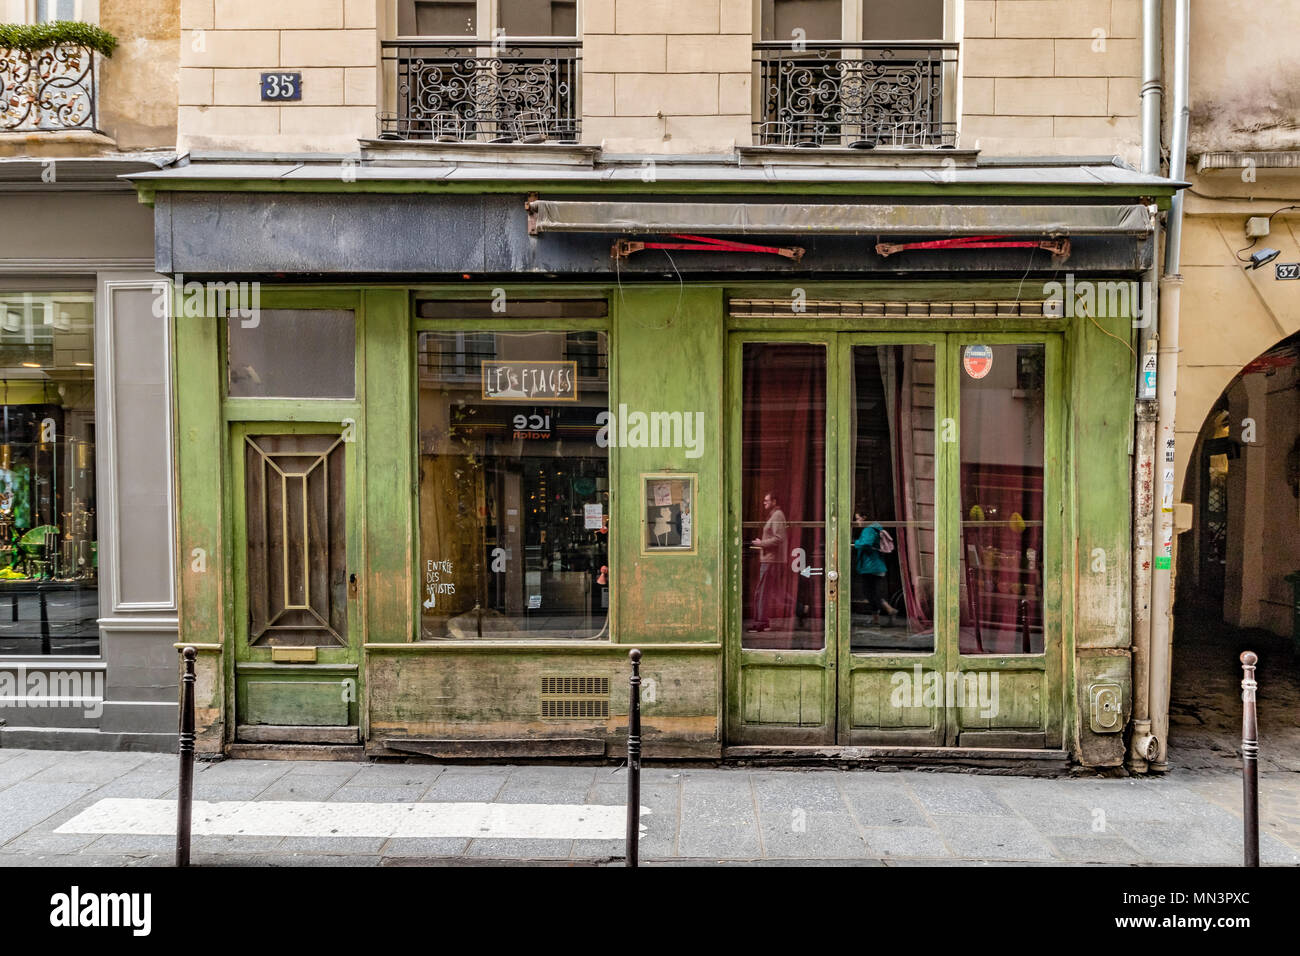 Dos personas se refleja en las ventanas de Les Etages un bar un bar discreto con un exterior verde desapareció en el corazón de Le Marais , París , Francia Foto de stock